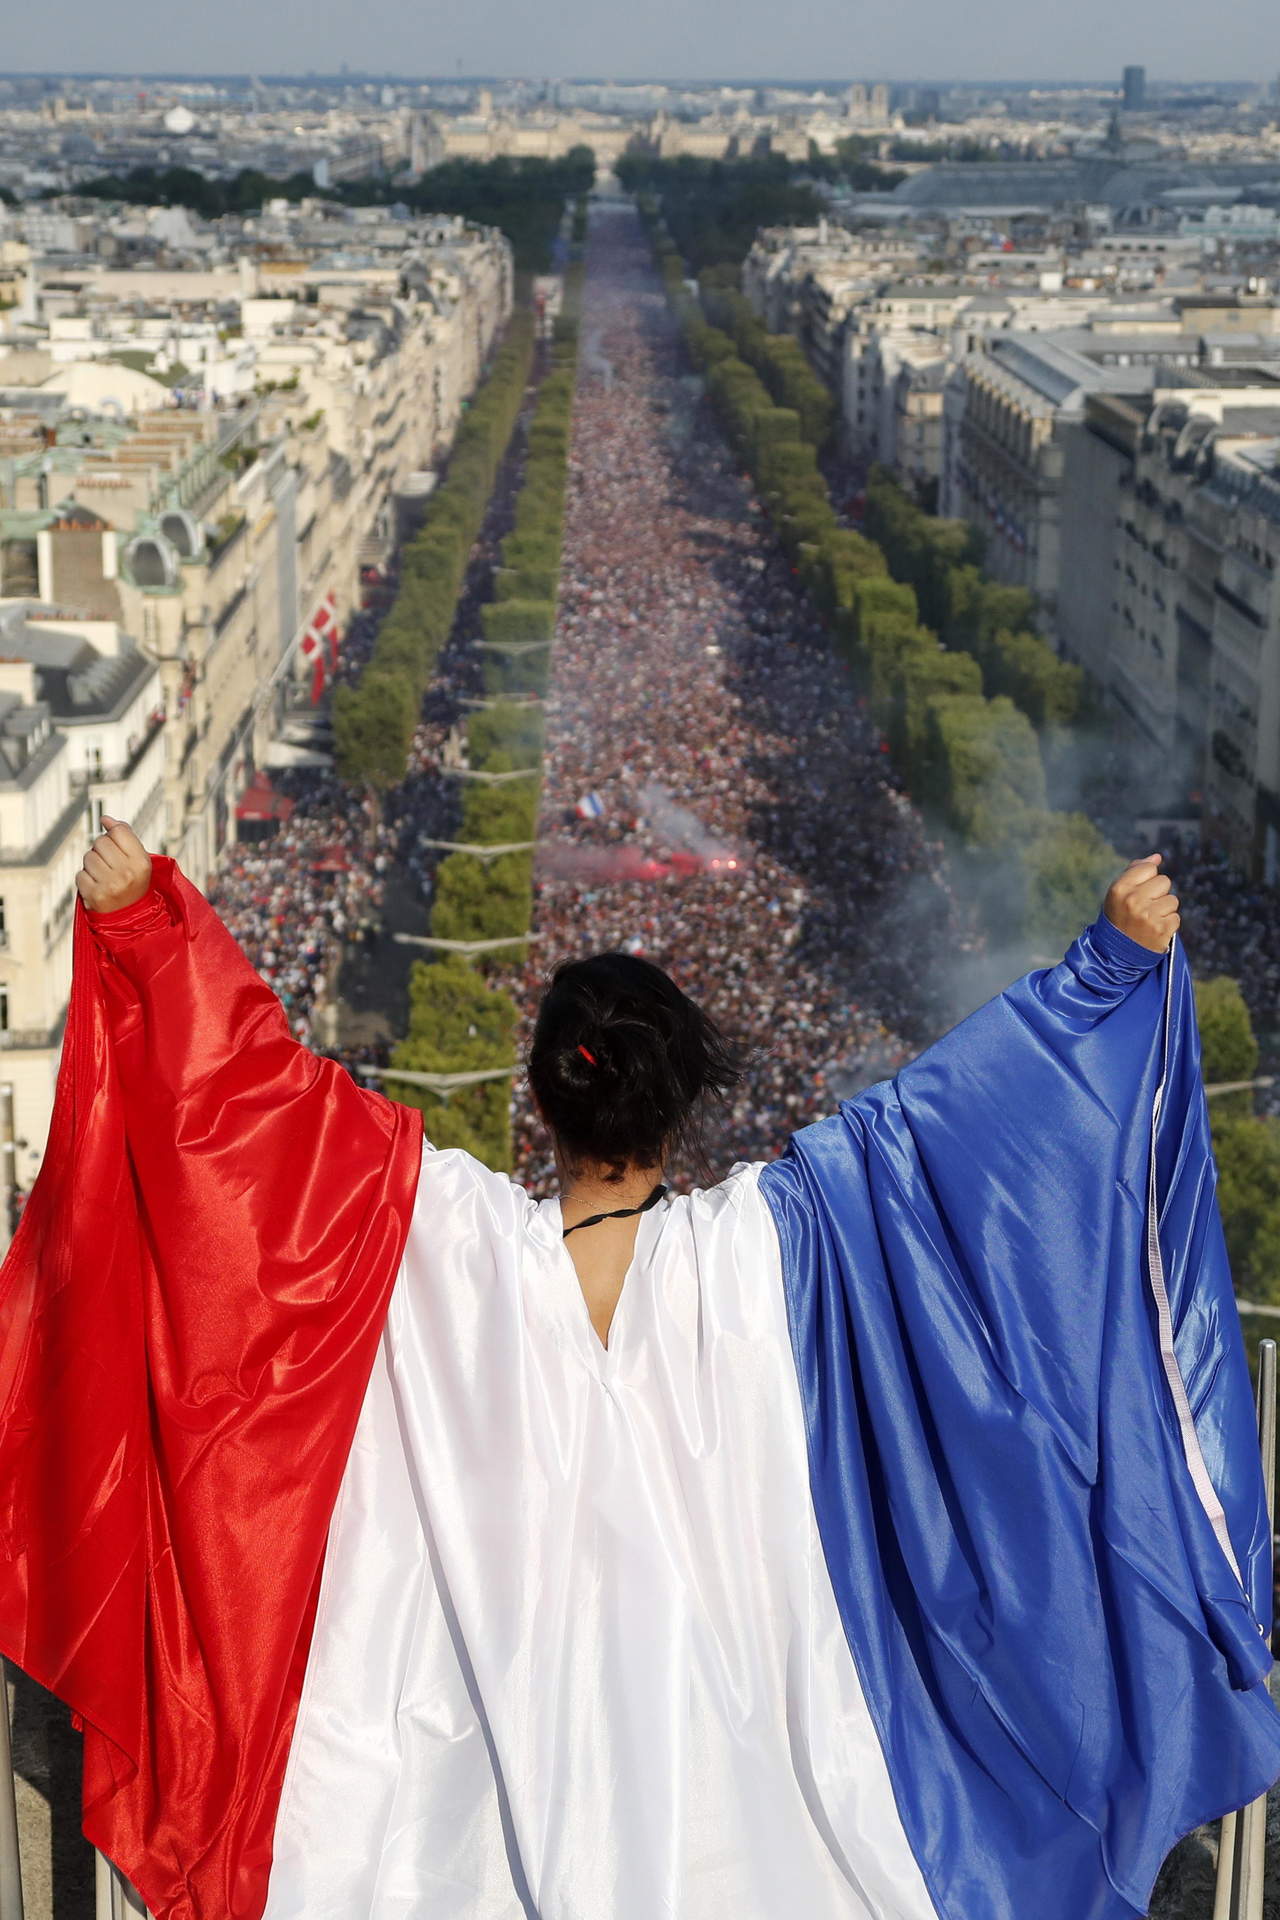 Una aficionada observa el festejo de miles de franceses desde lo alto en París. (EFE)